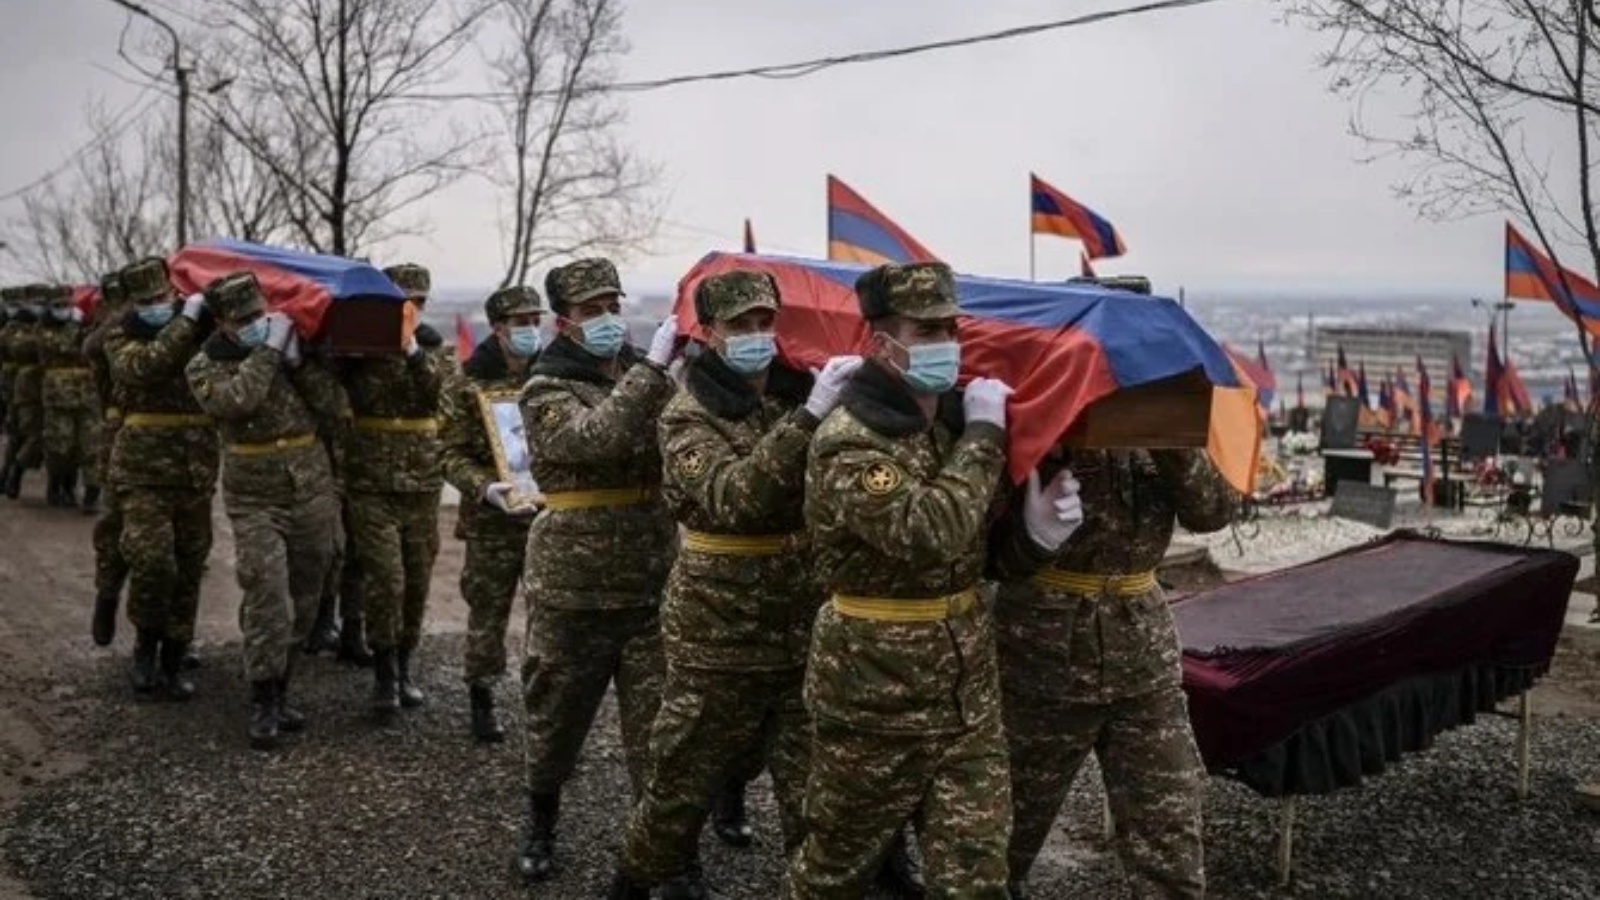 جنود يحملون النعوش خلال الجنازات في مقبرة عسكرية في يريفان في 2 مارس 2021 ، لمقاتلين قتلوا خلال الحرب في ناغورنو قرة باخ